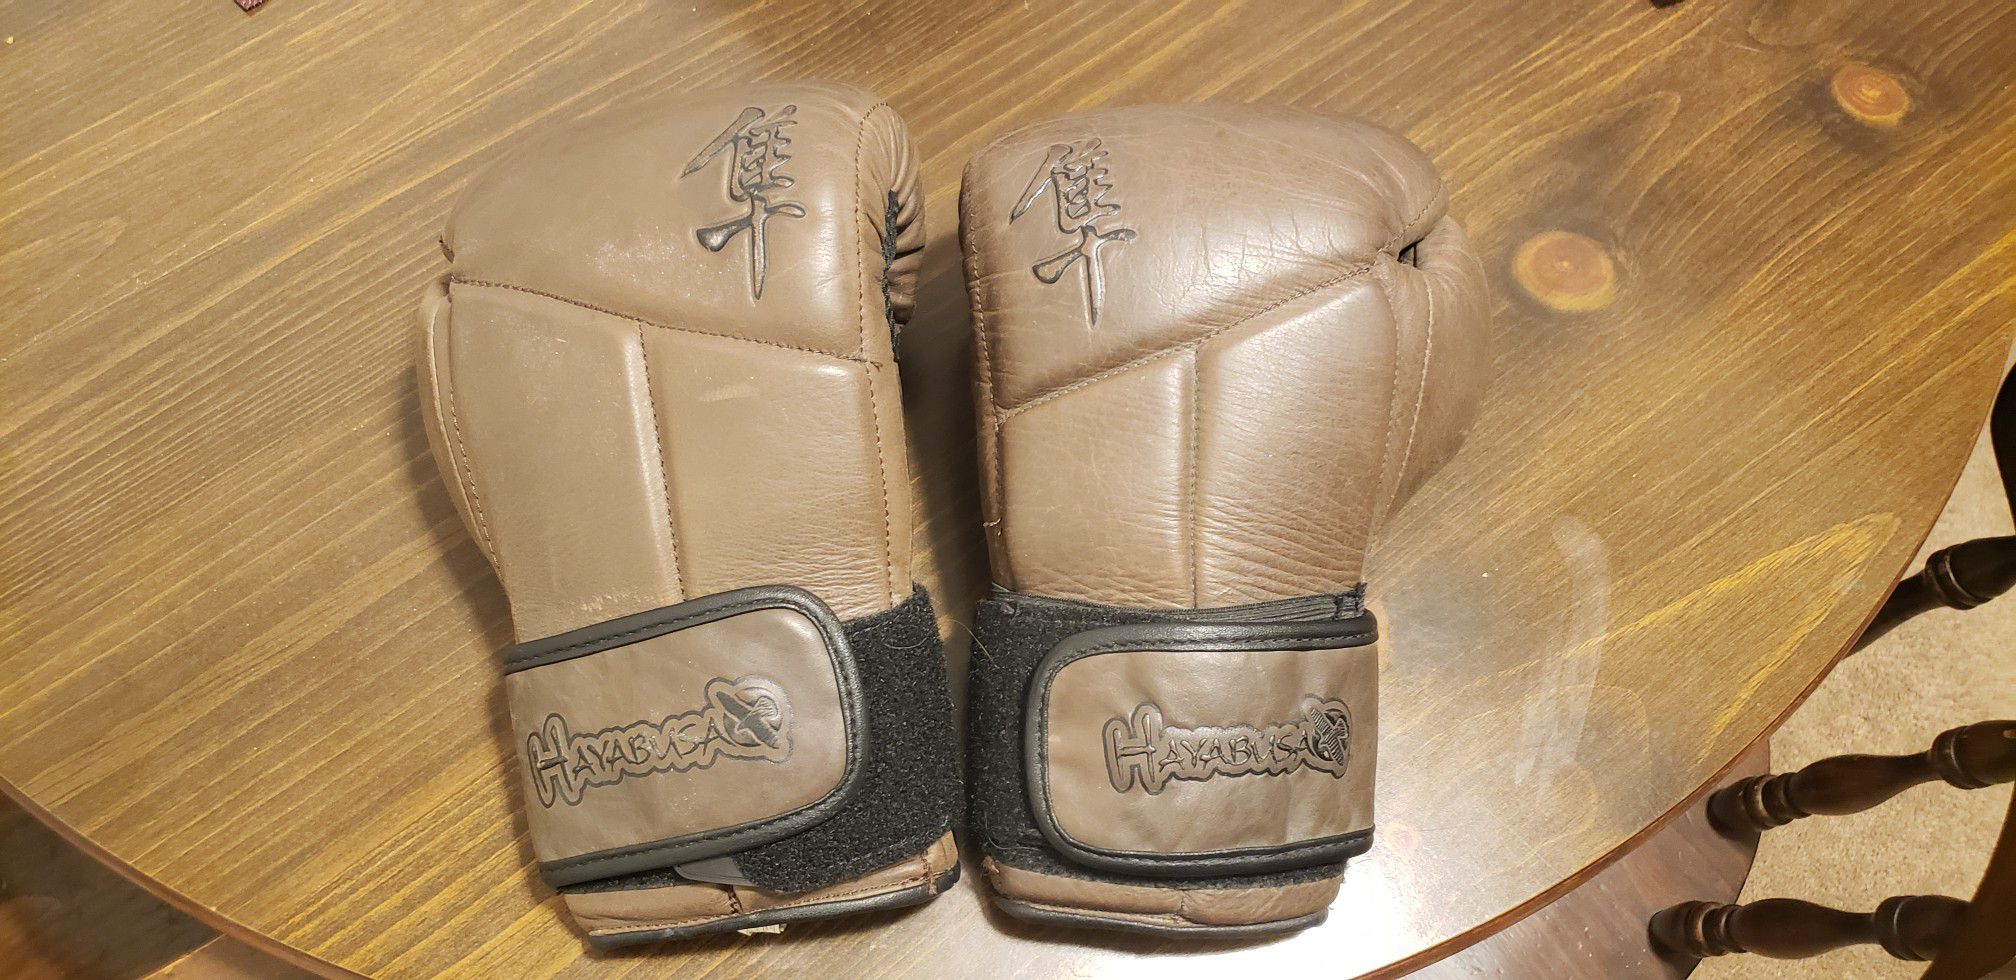 Hayabusa Kanpeki Elite 3.0 boxing gloves